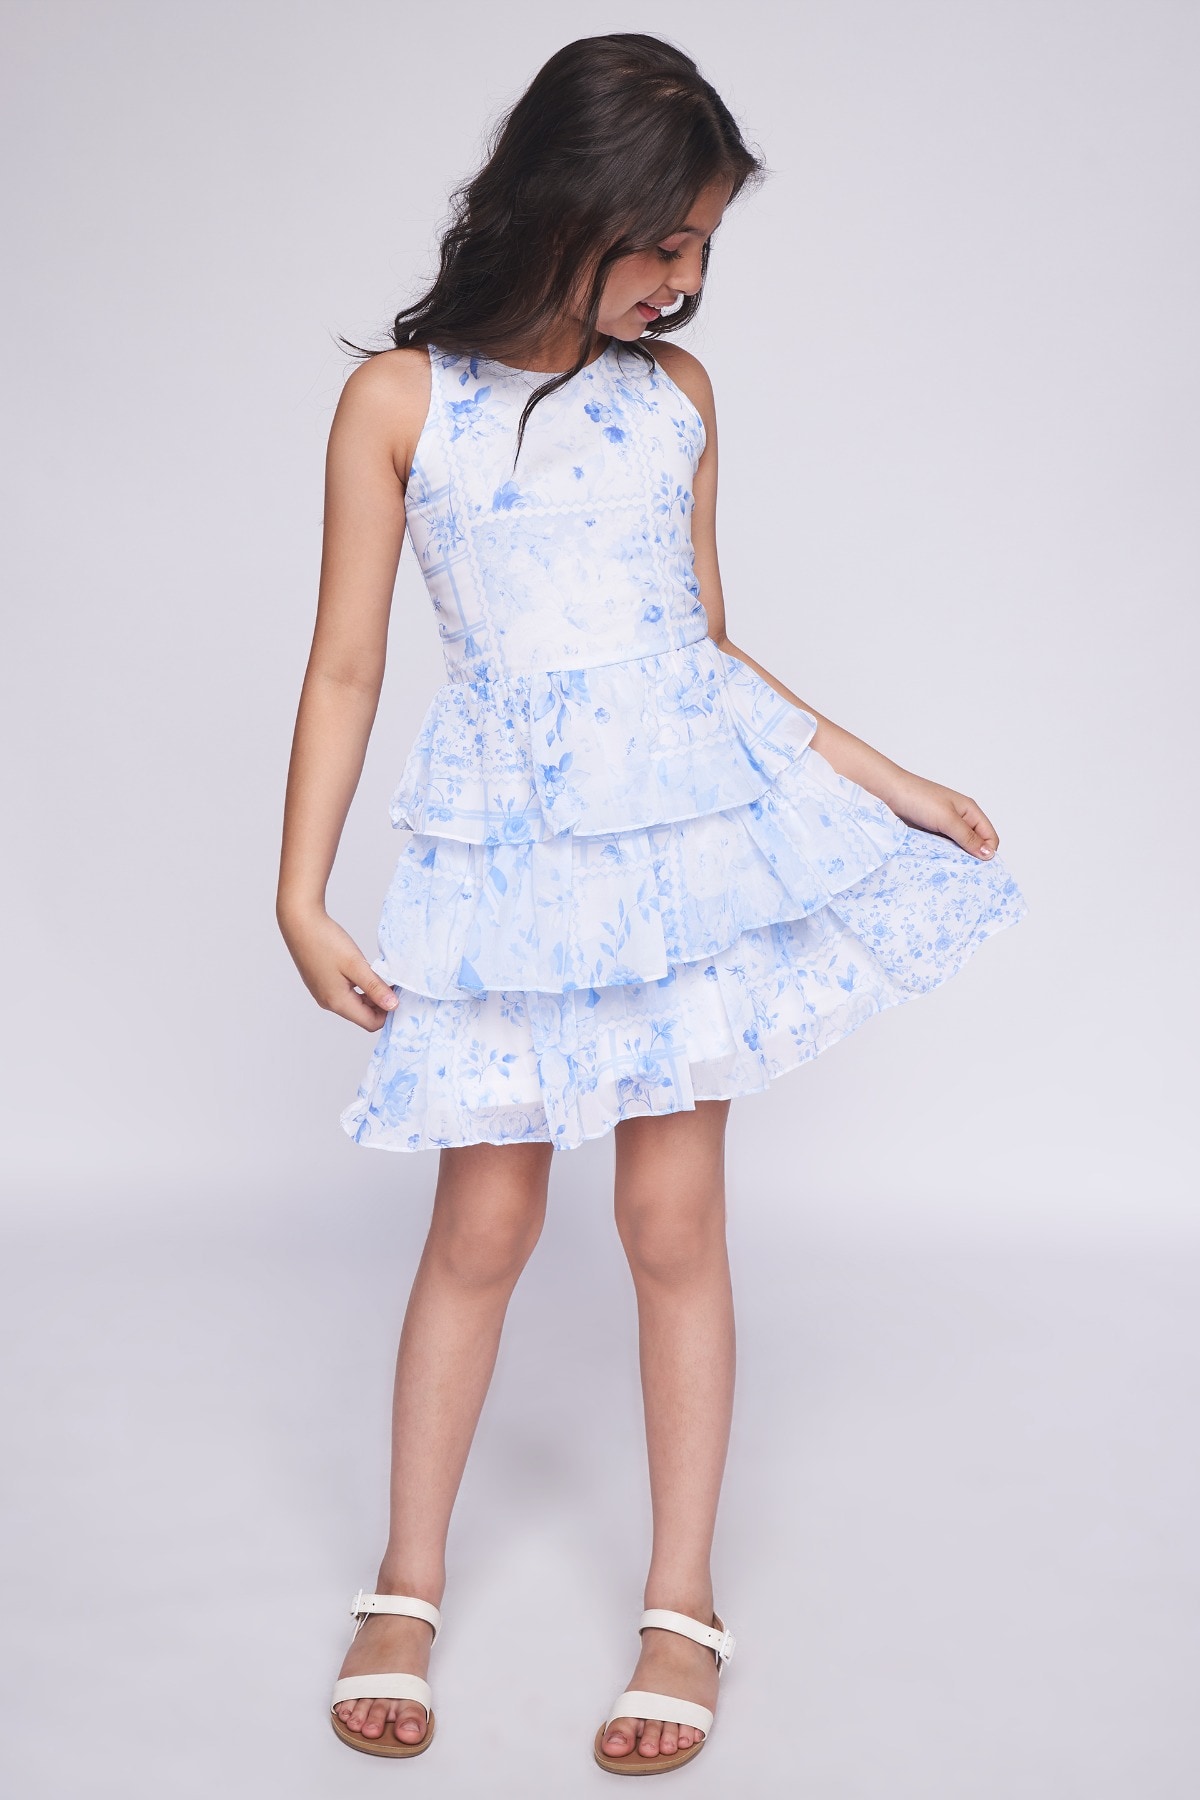 7 - Powder Blue Floral Flared Dress, image 7